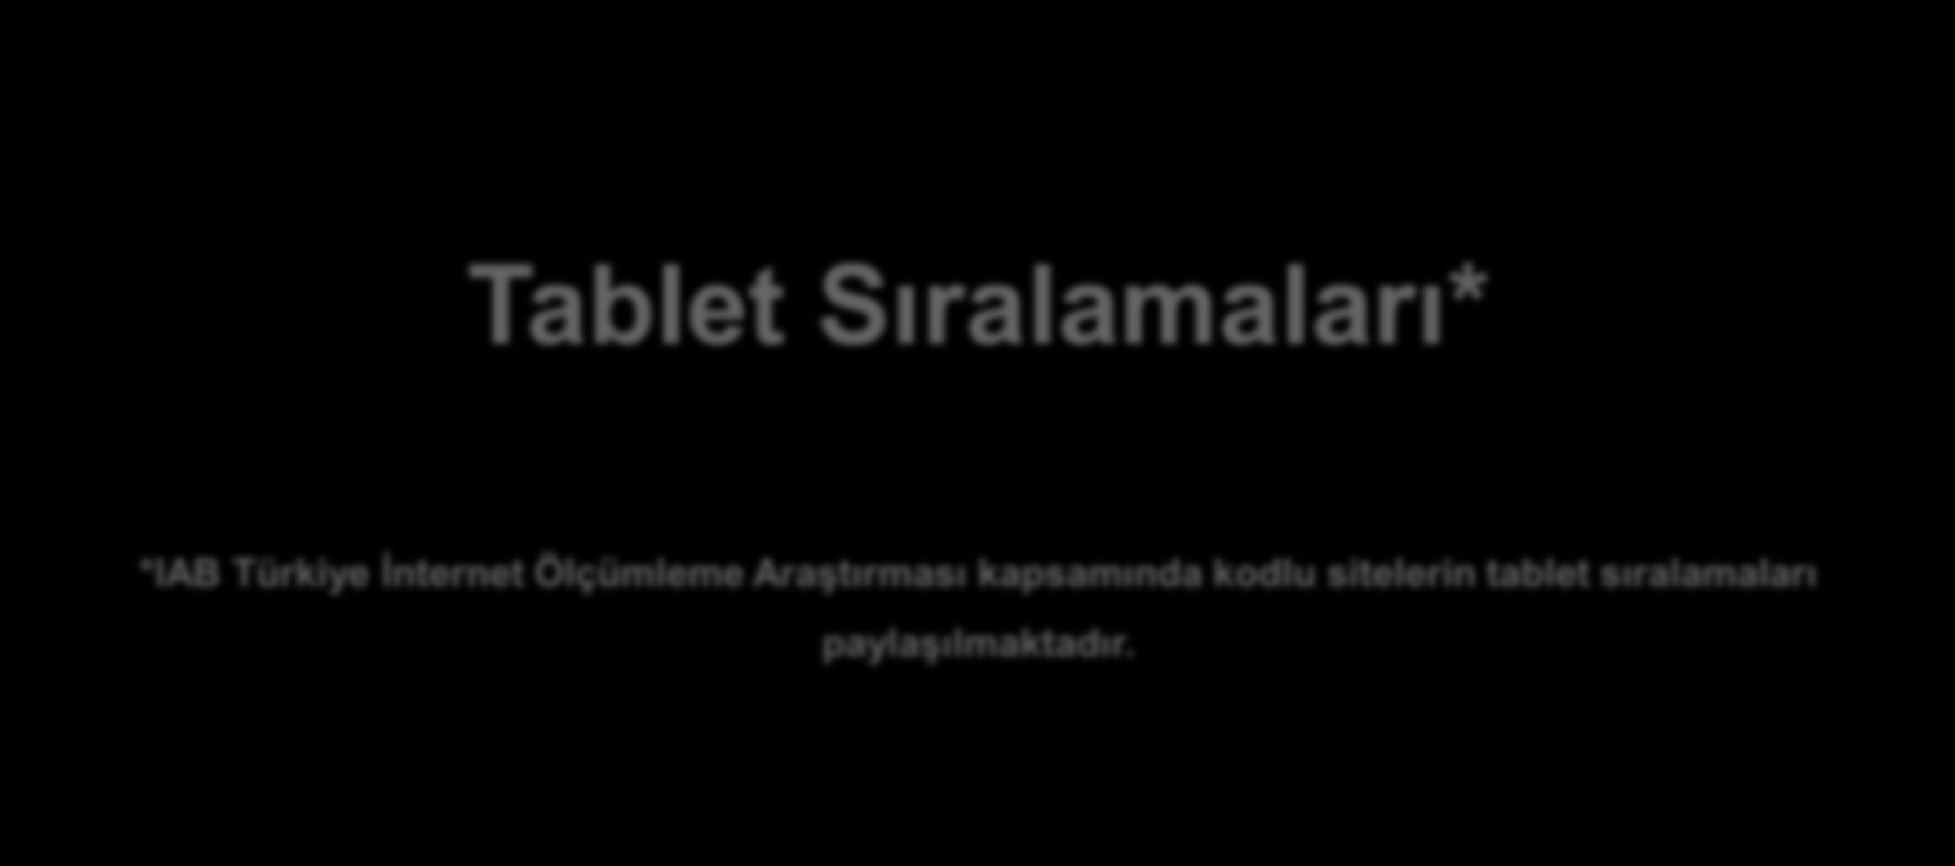 Tablet Sıralamaları* *IAB Türkiye İnternet Ölçümleme Araştırması